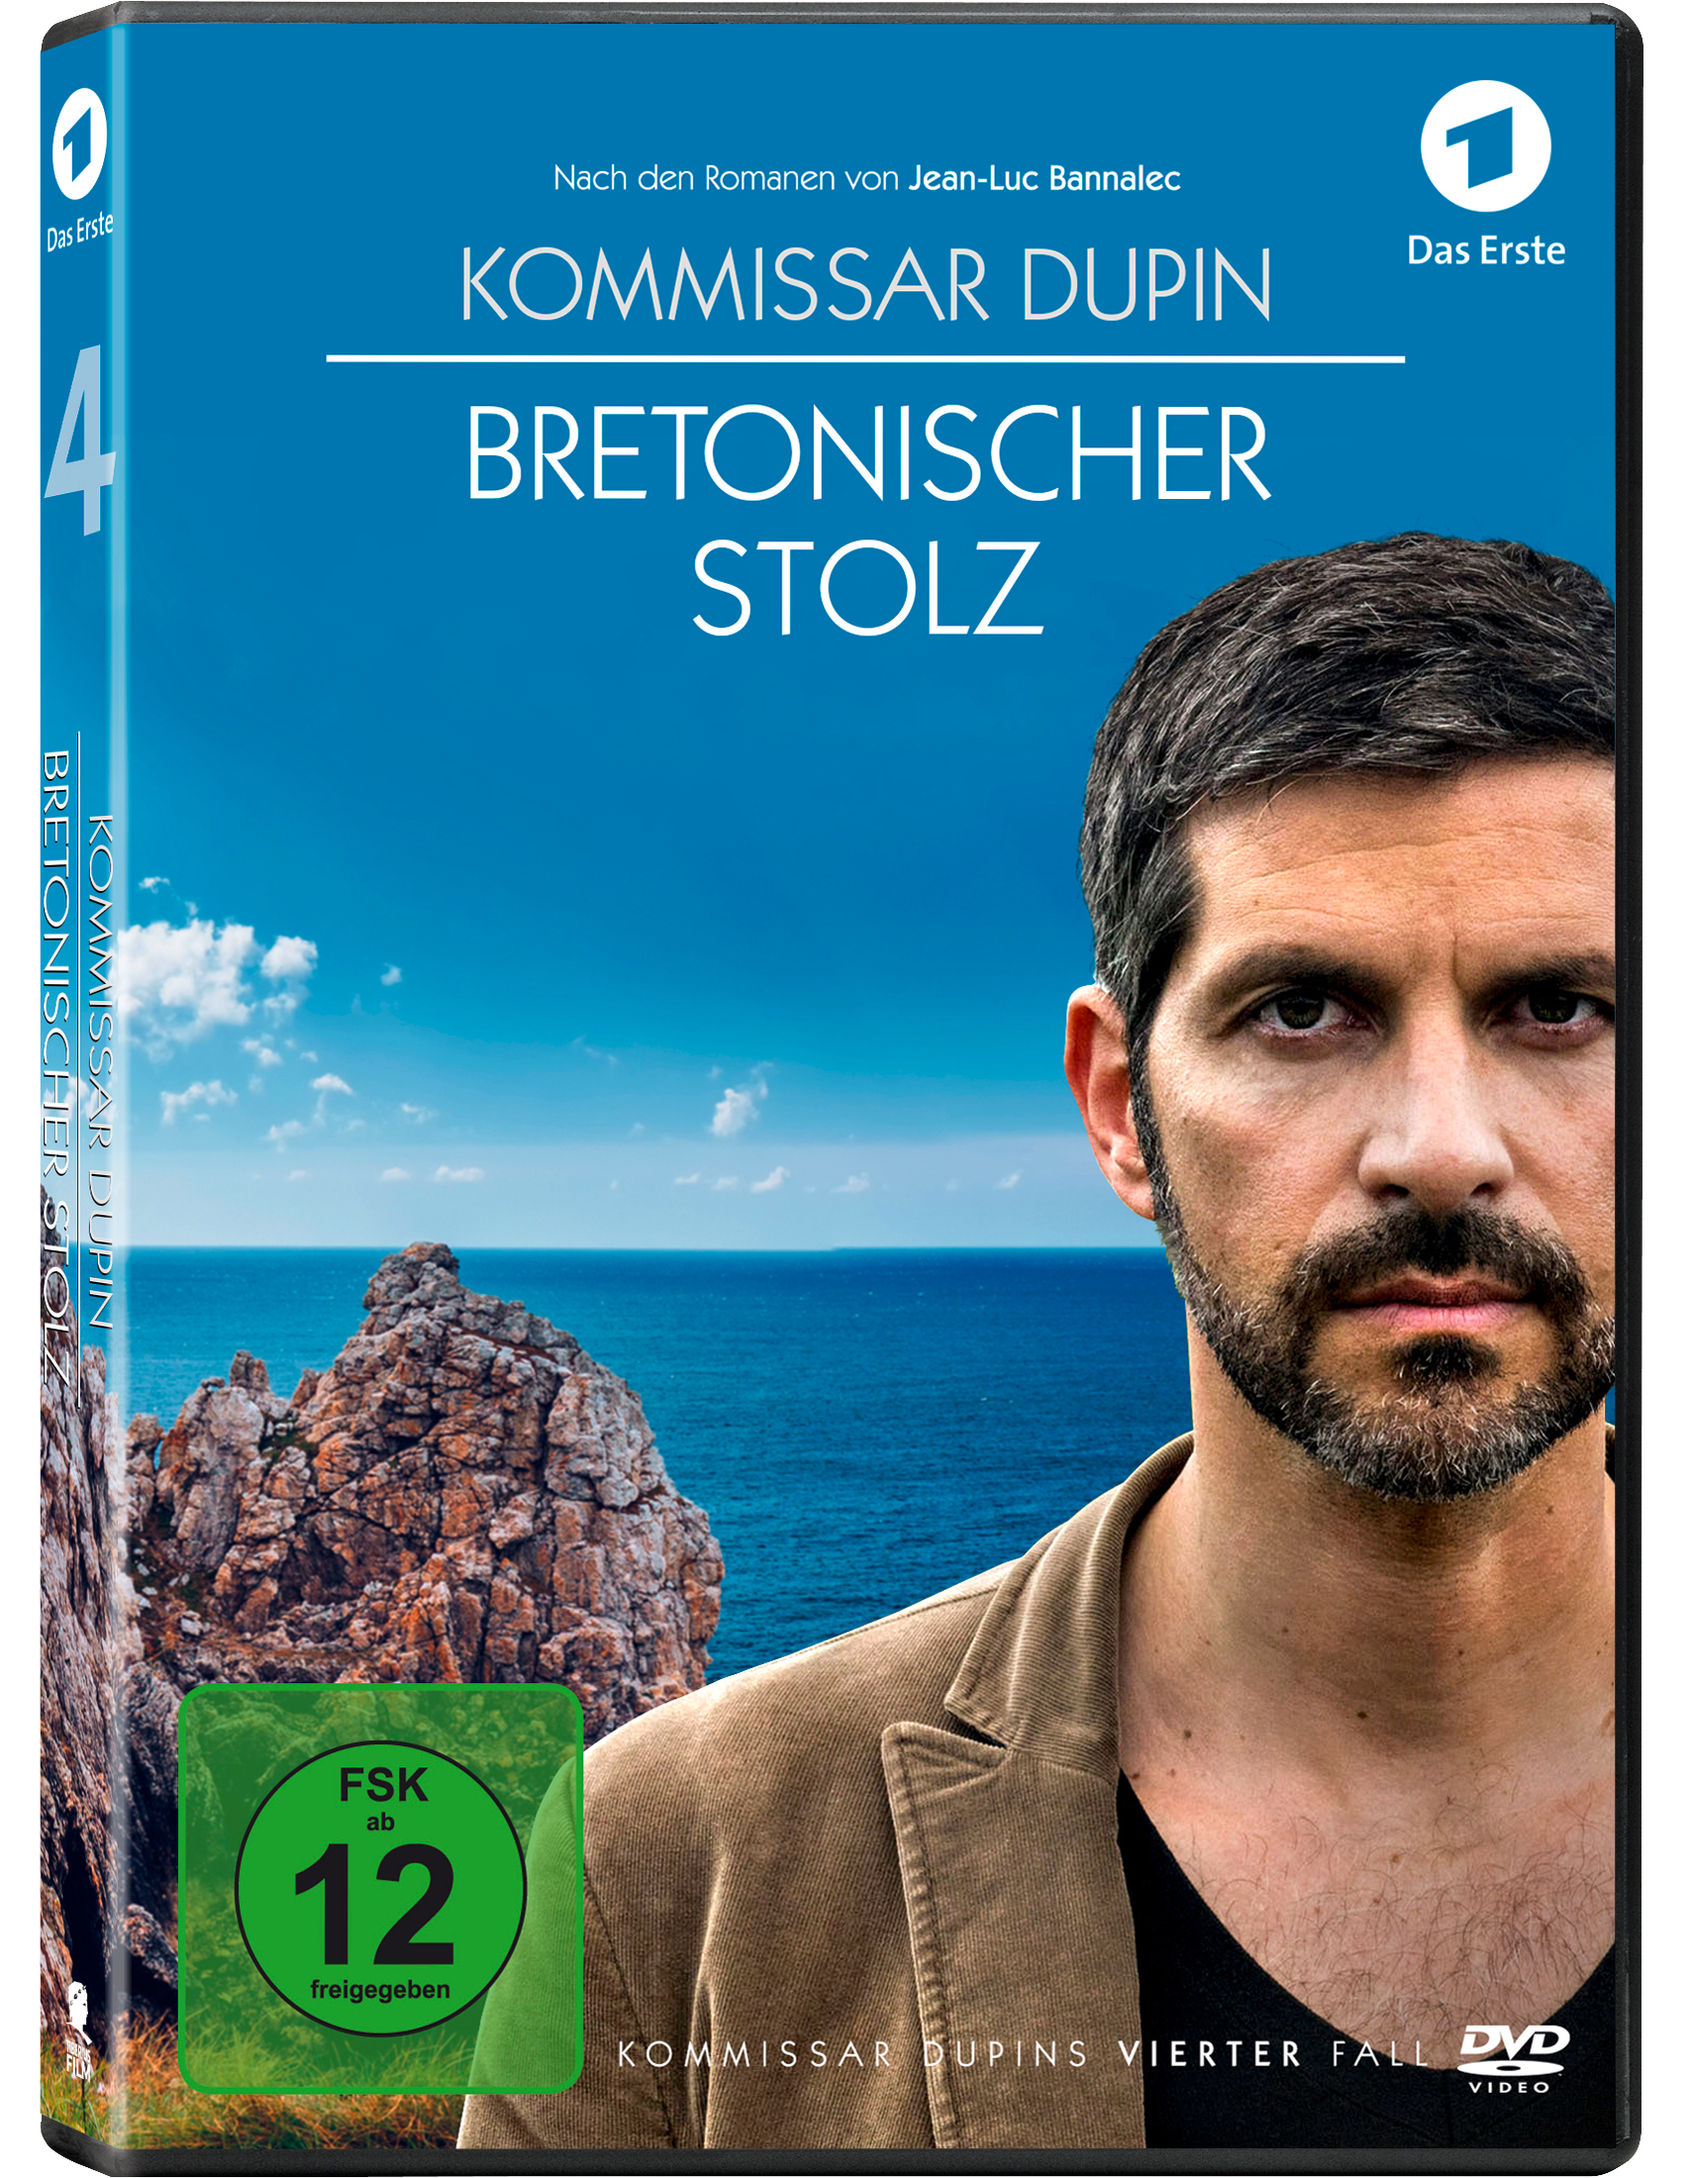 Kommissar Dupin 4: Bretonischer Stolz DVD | Weltbild.de